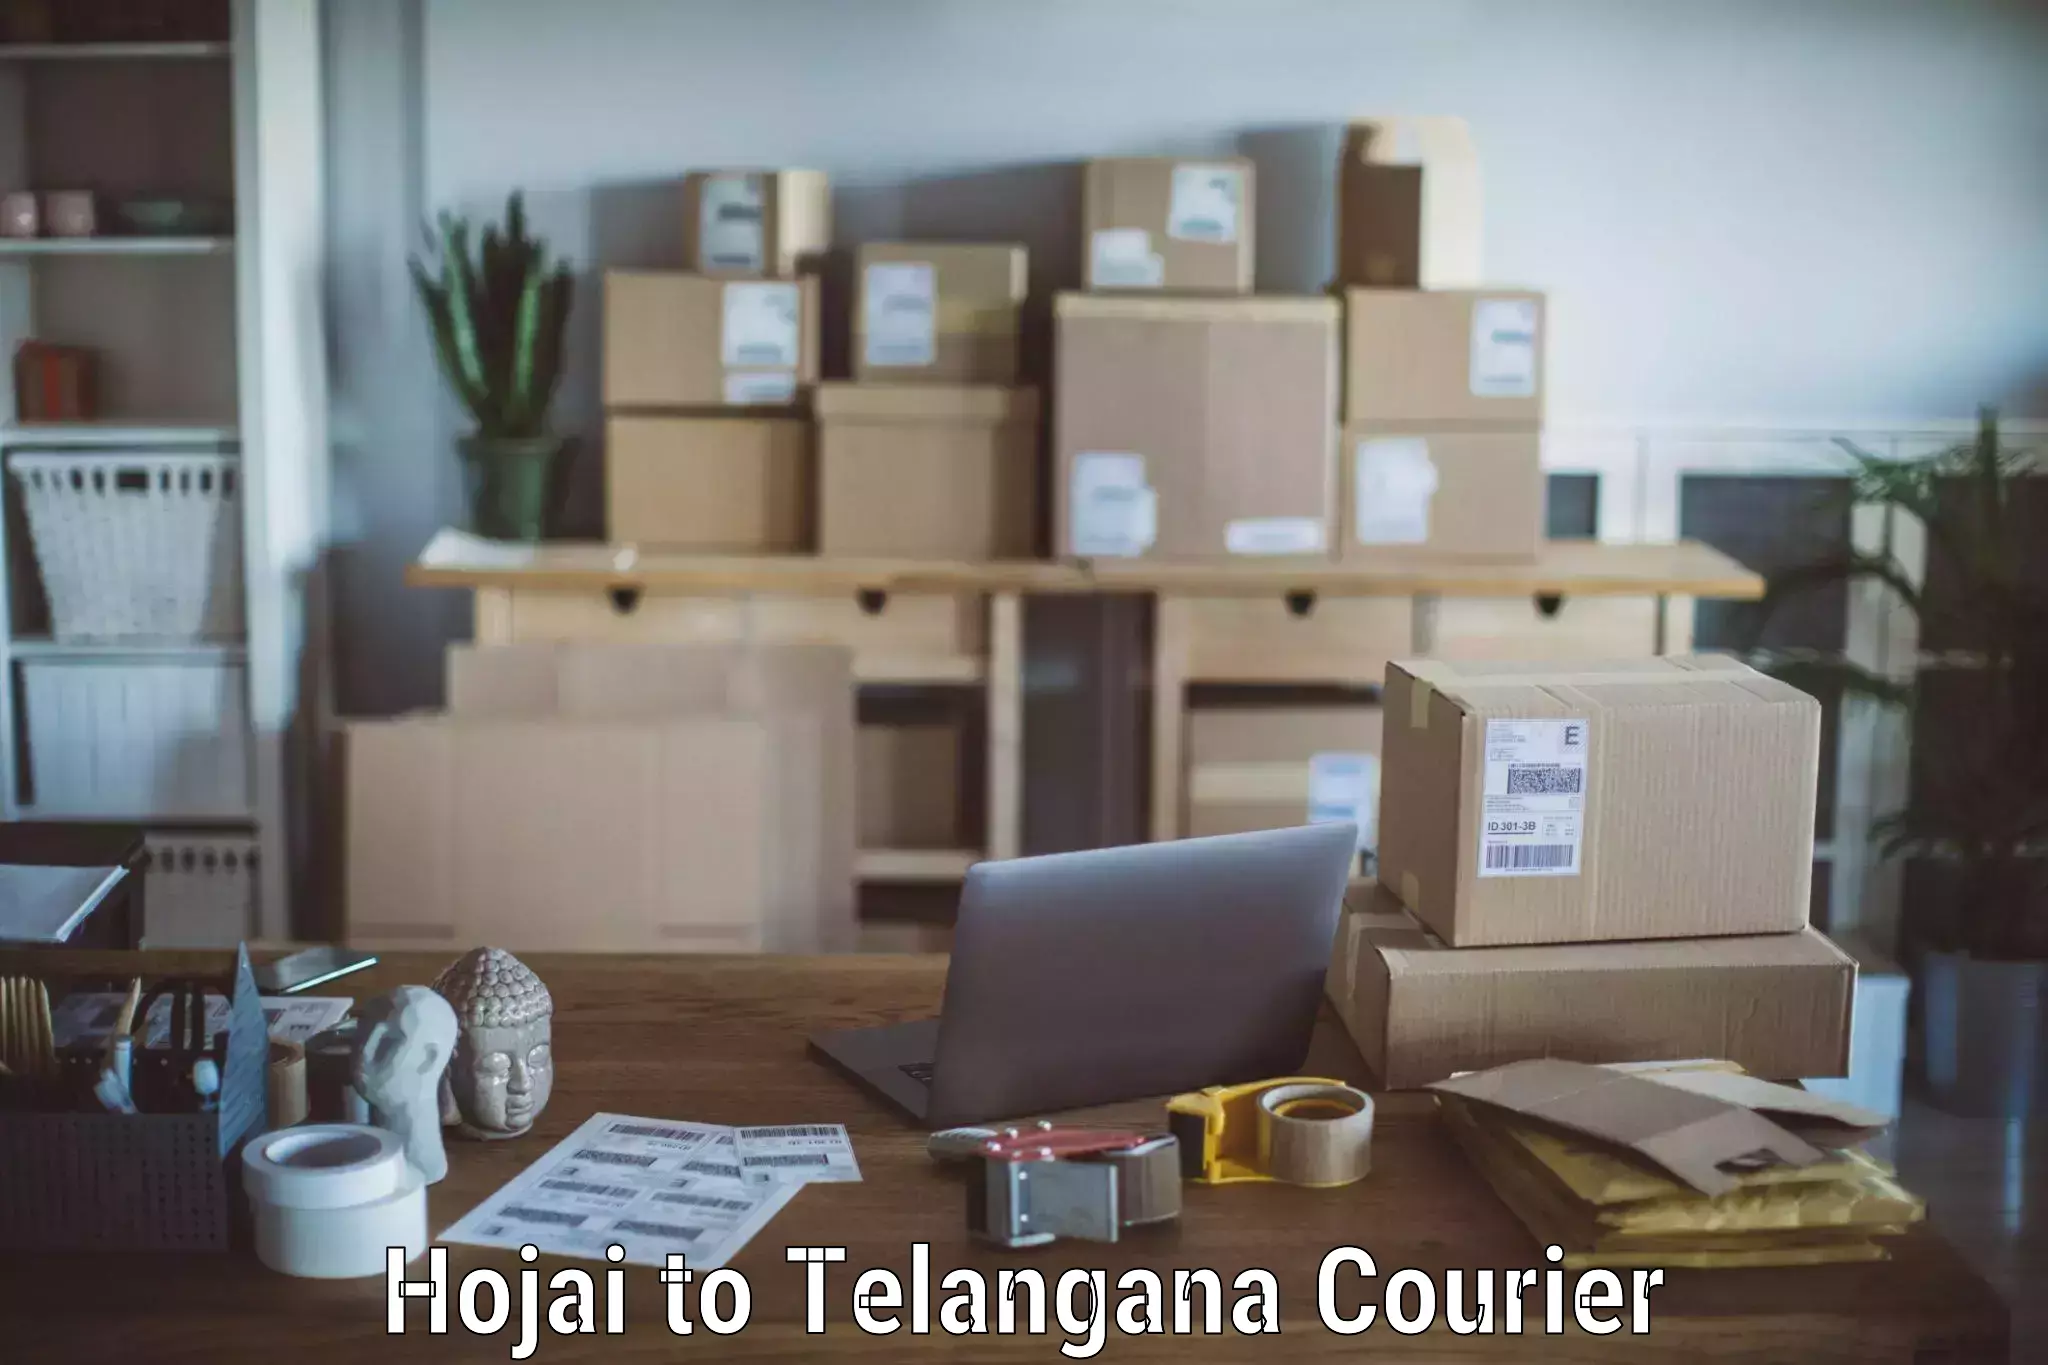 Furniture delivery service Hojai to Tallada